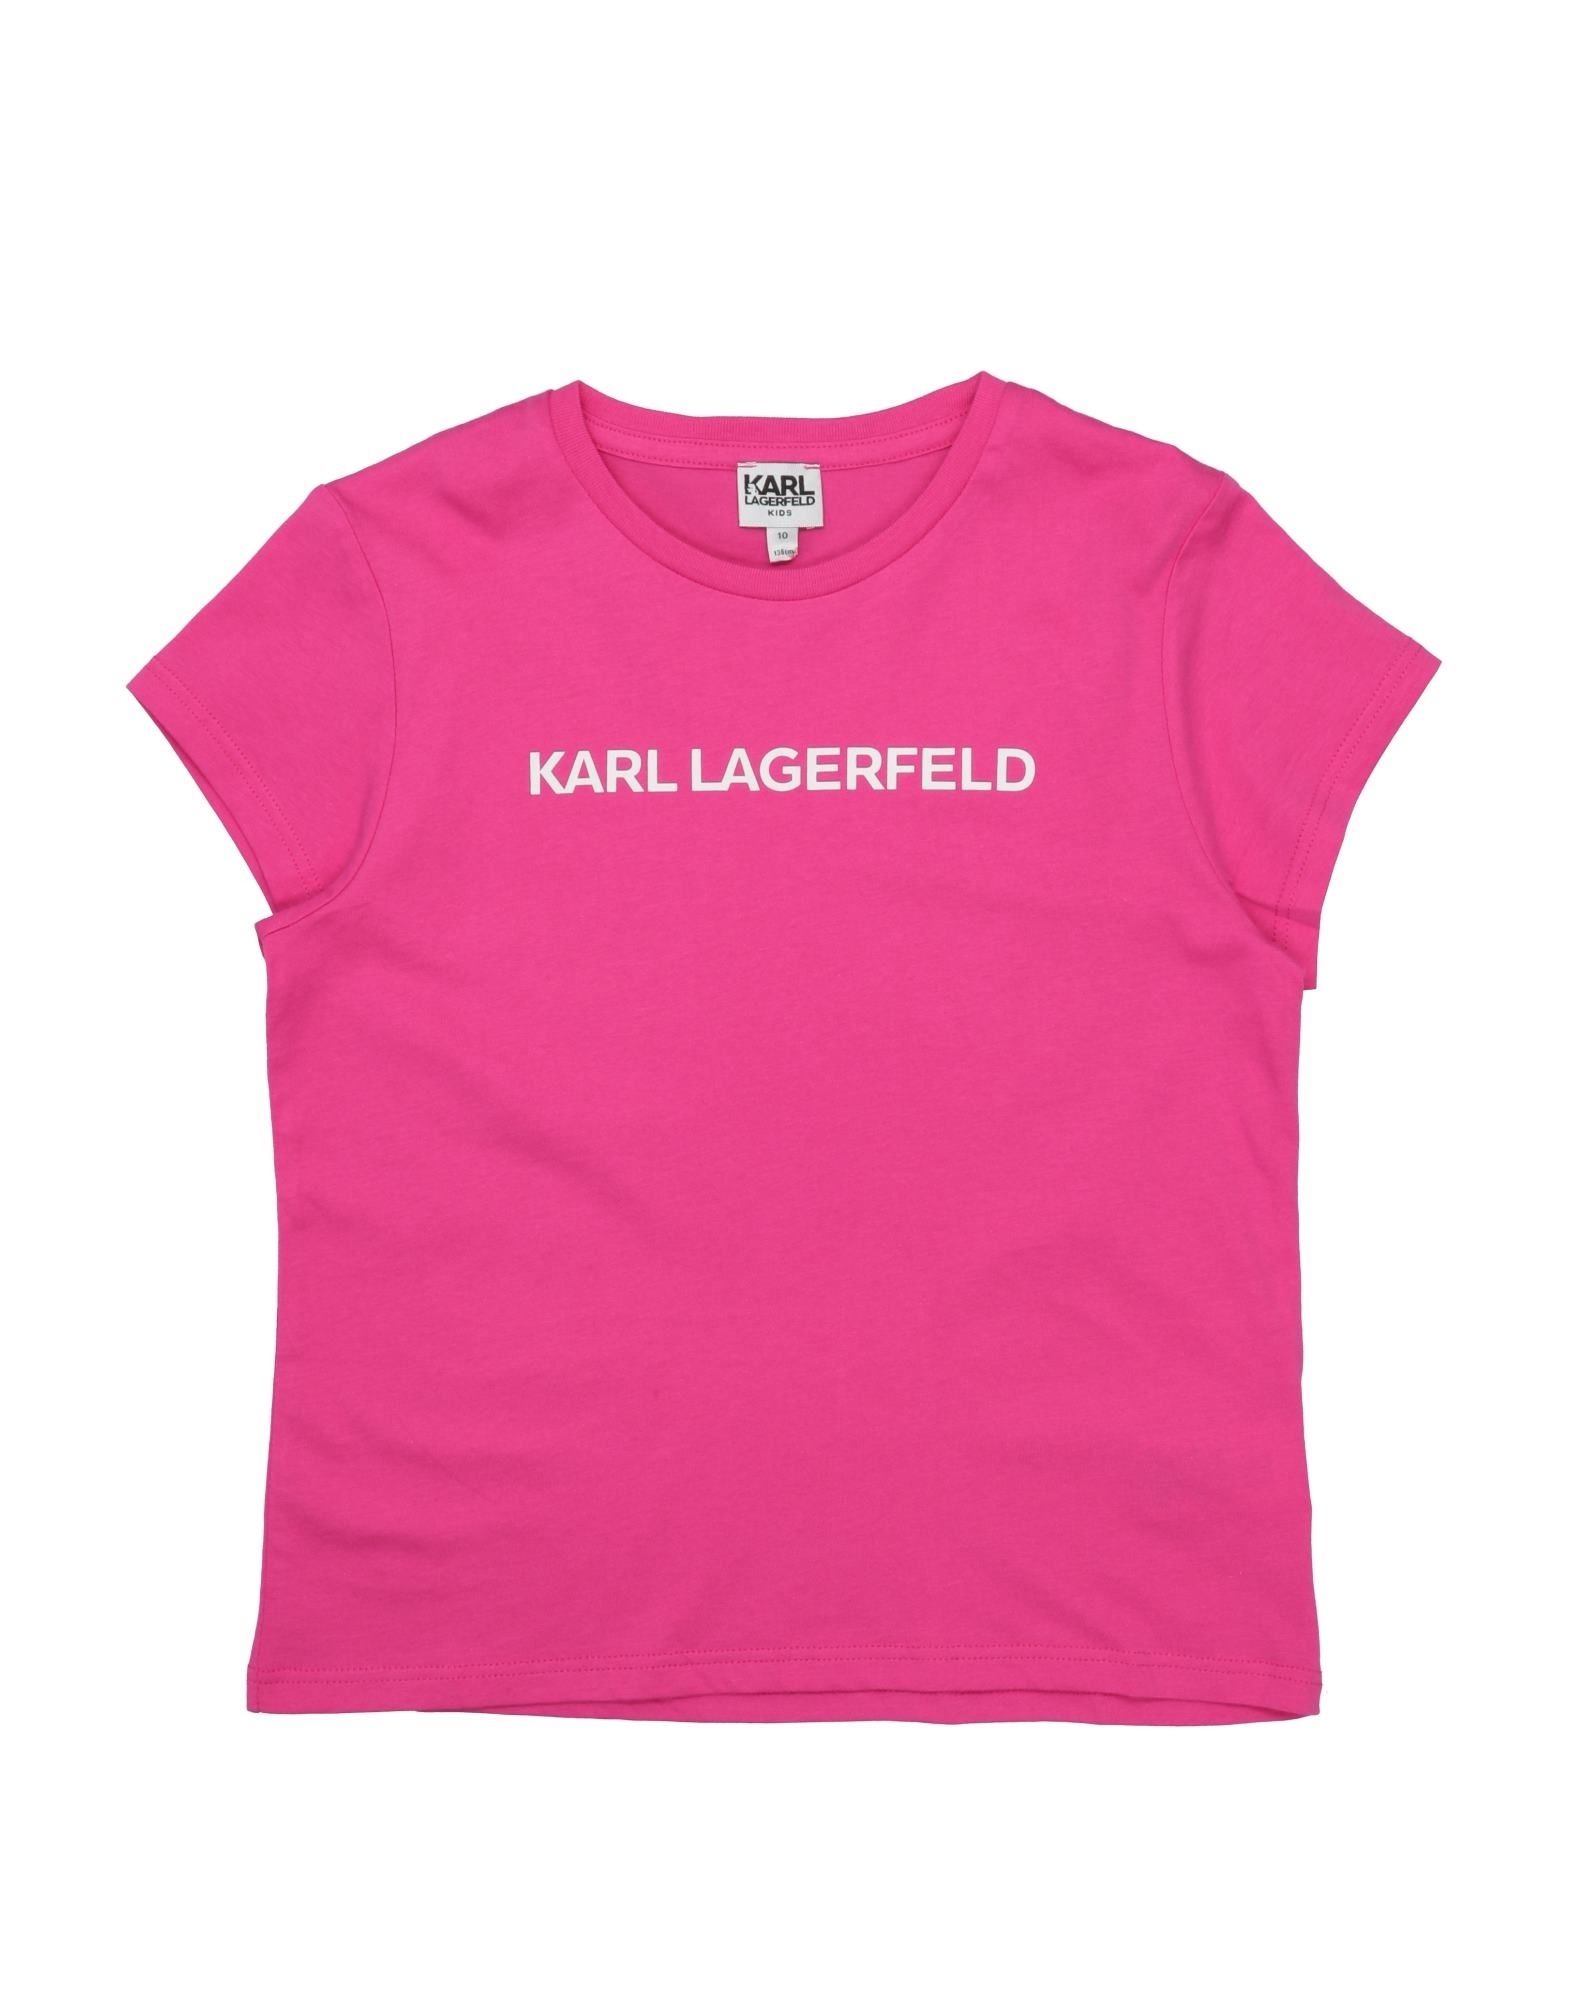 KARL LAGERFELD T-SHIRTS,12454397NU 2